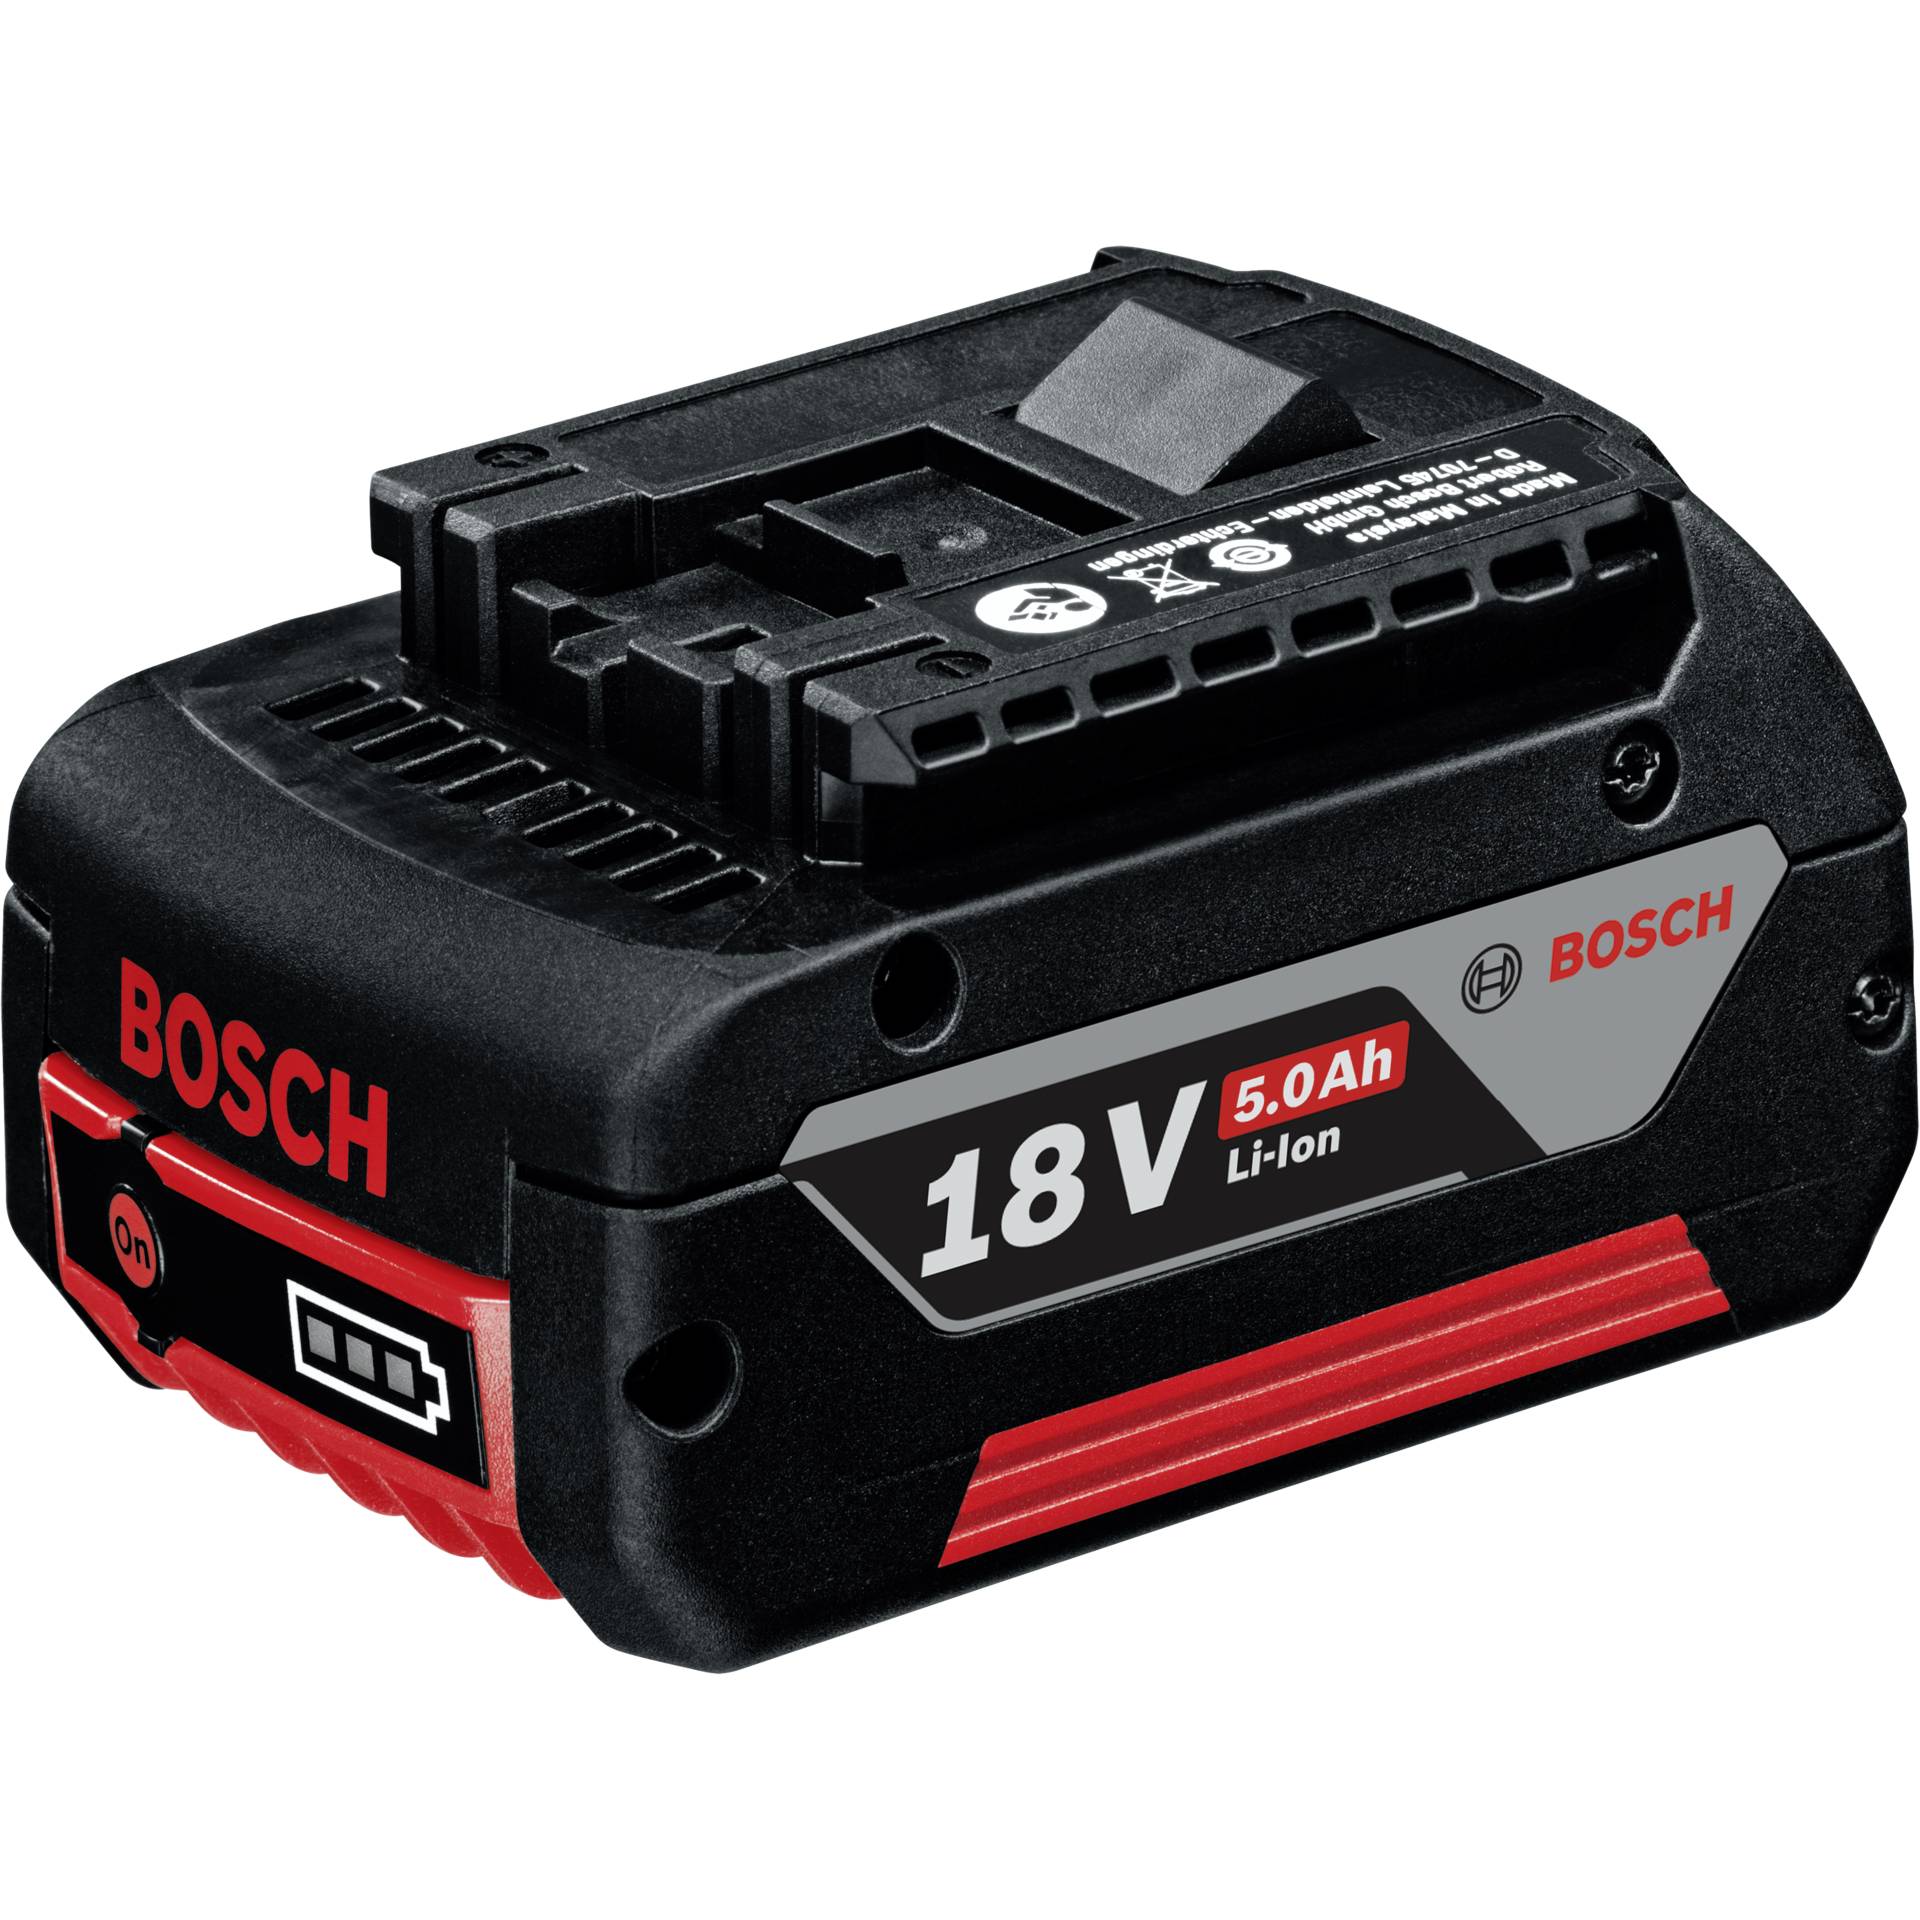 Bosch GBA 18V 5.0Ah batt.